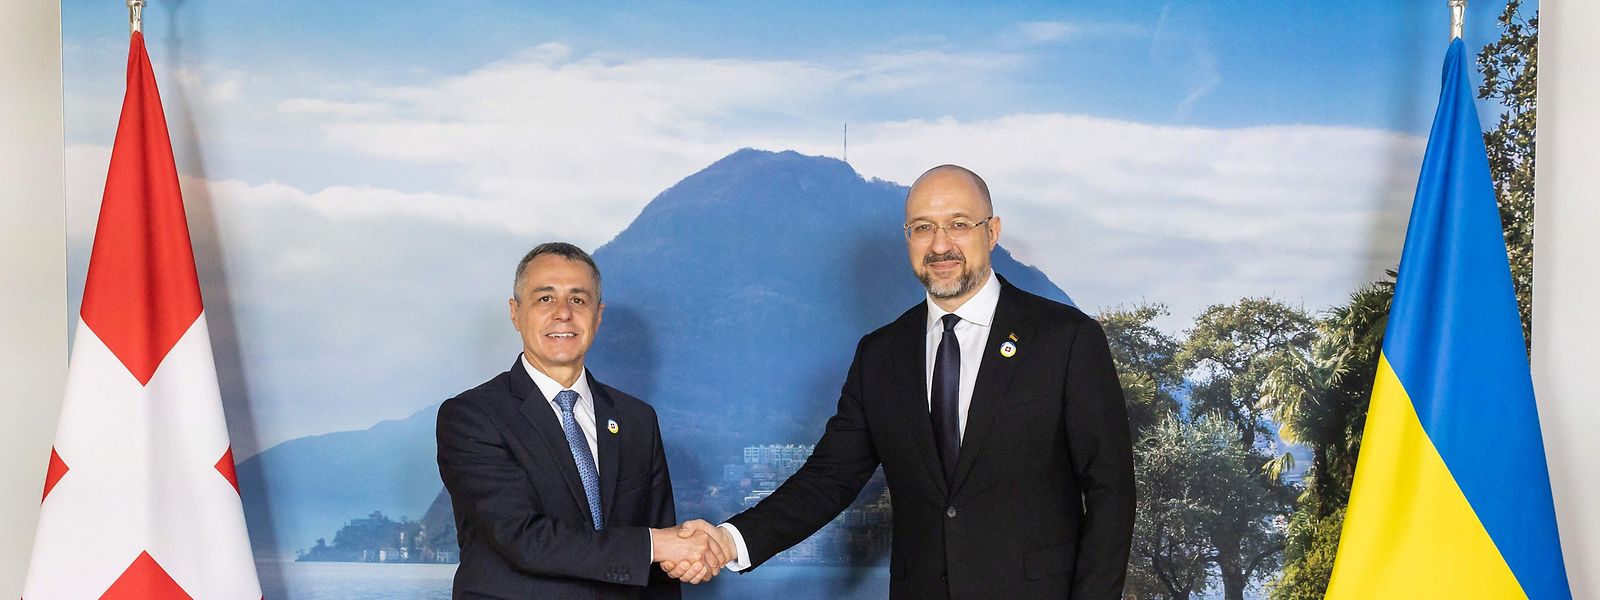 Die Hauptprotagonisten der Konferenz im schweizerischen Lugano: Der Schweizer Bundespräsident und Außenminister Ignazio Cassis (links) und der ukrainische Ministerpräsident Denis Schmihal.